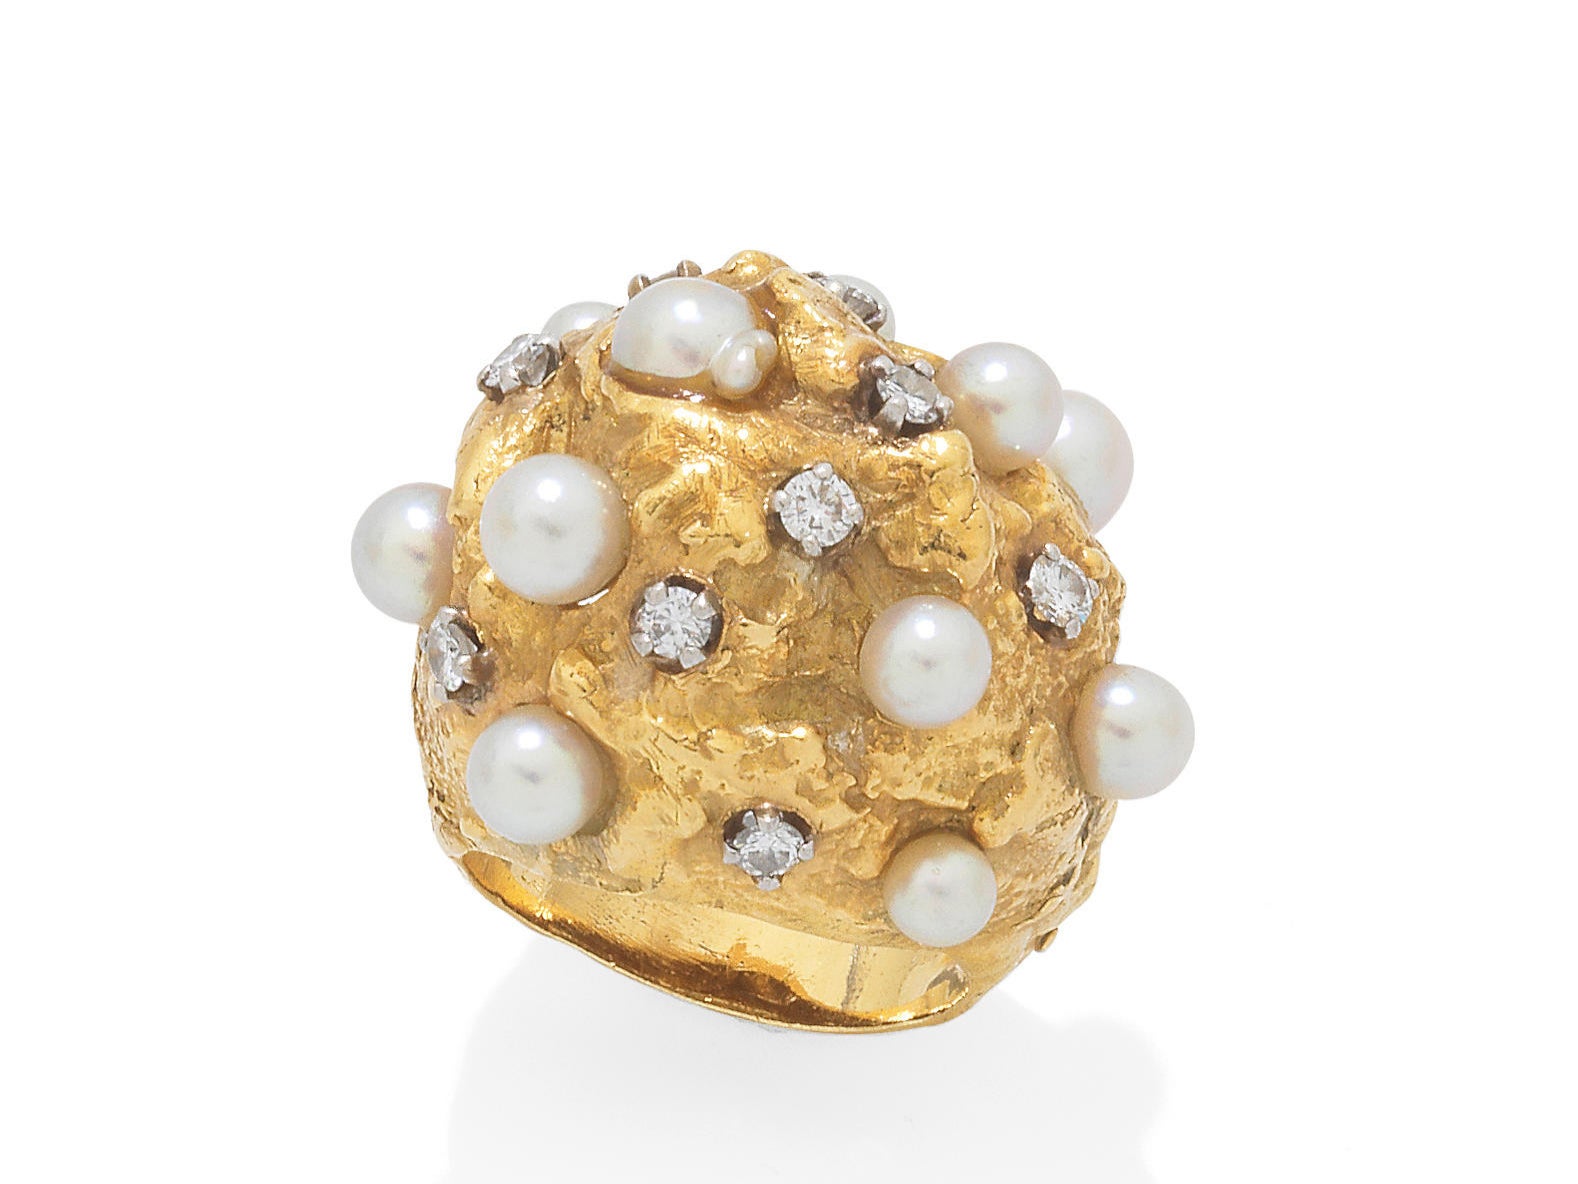 El anillo con perlas cultivadas y diamantes engastados fue un regalo de Warren Beatty a Joan Collins en 1960